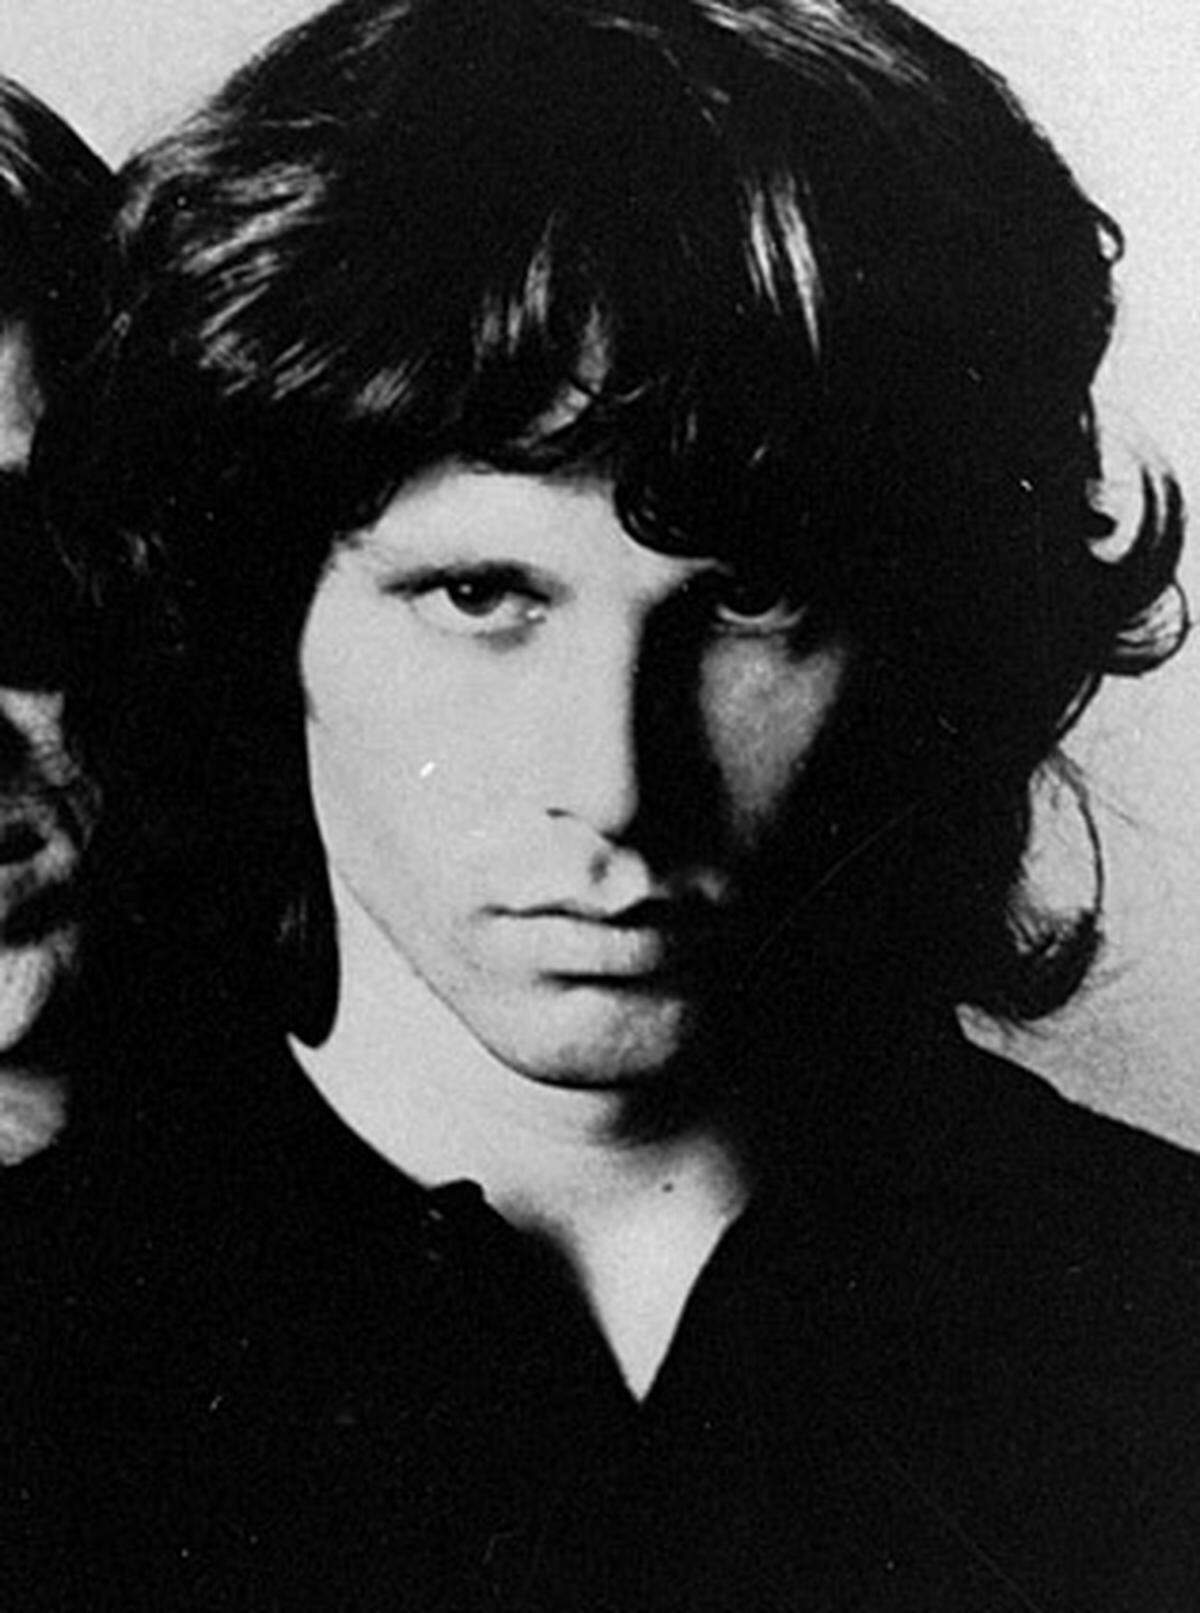 Der Sänger und Kopf der legendären Blues- und Rockband The Doors inszenierte viele seiner Bühnenauftritte im Drogenwahn. Seine Ausfälle führten im Frühjahr 1971 zur Trennung. Morrison, mitunter als James Dean der 68er-Generation eingestuft, starb am 3. Juli 1971 in einem Hotel in Paris an einem Herzschlag.